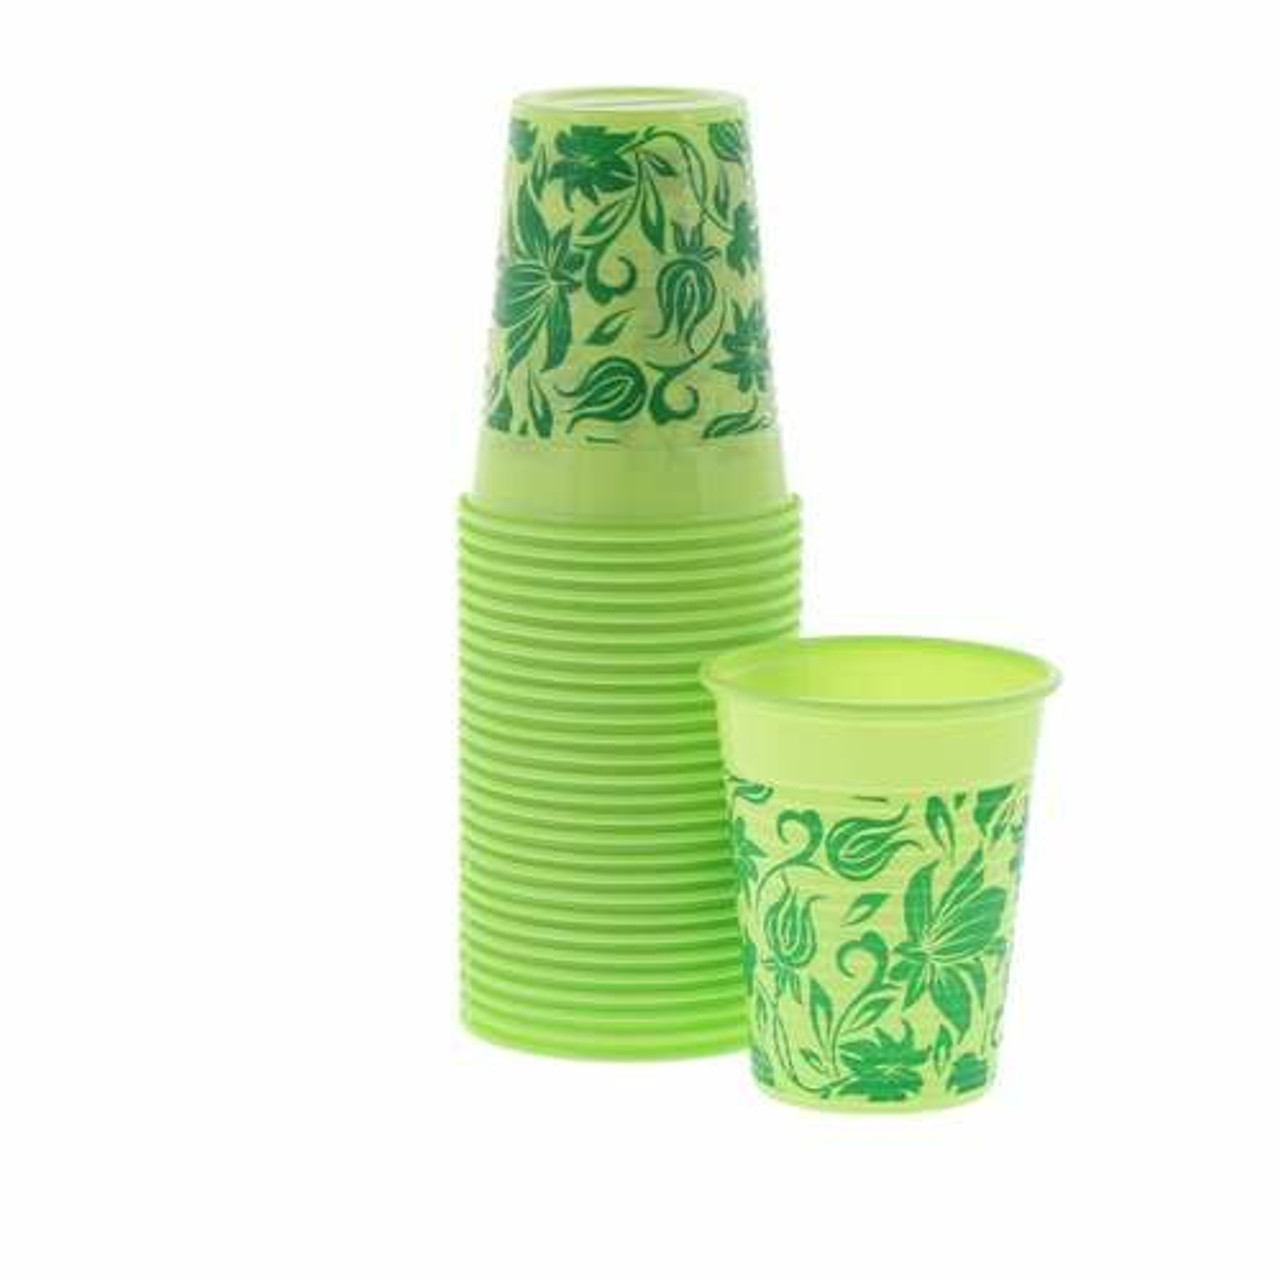 Monoart Plastic Cups Lime, 200 ml, 100/Pkg. - Dental Wholesale Direct